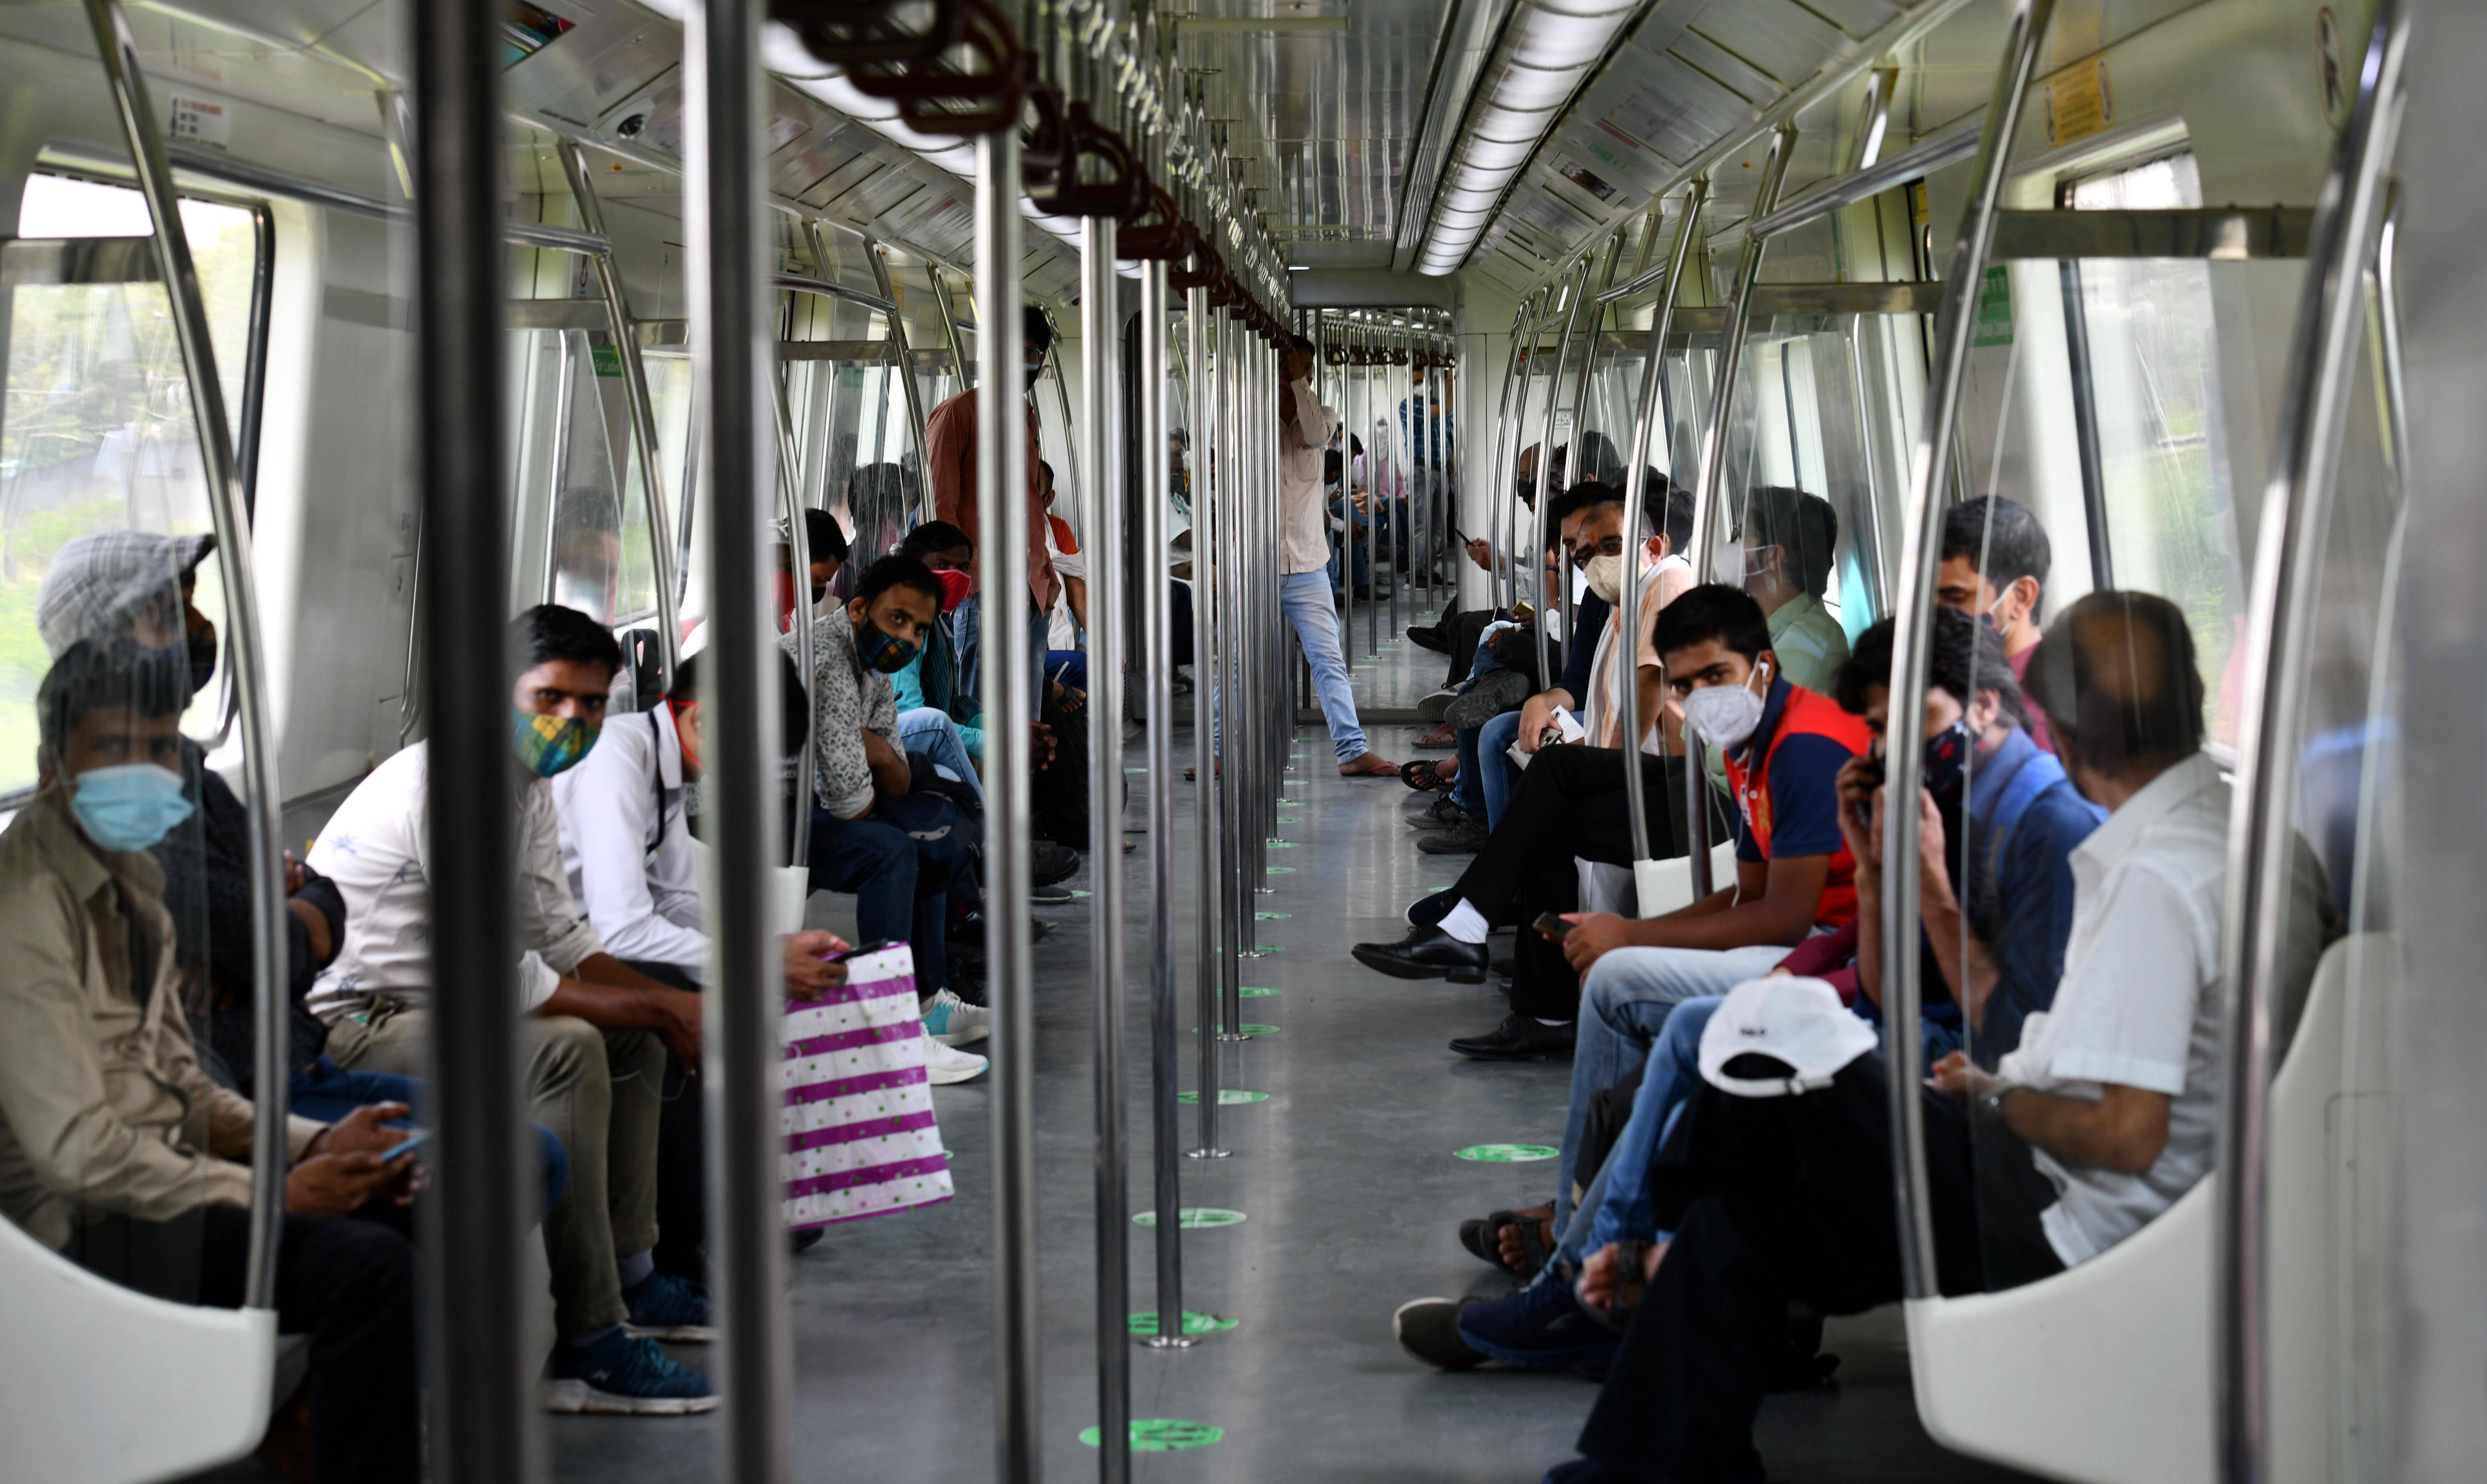 6月7日,在印度新德里,乘客乘坐地铁